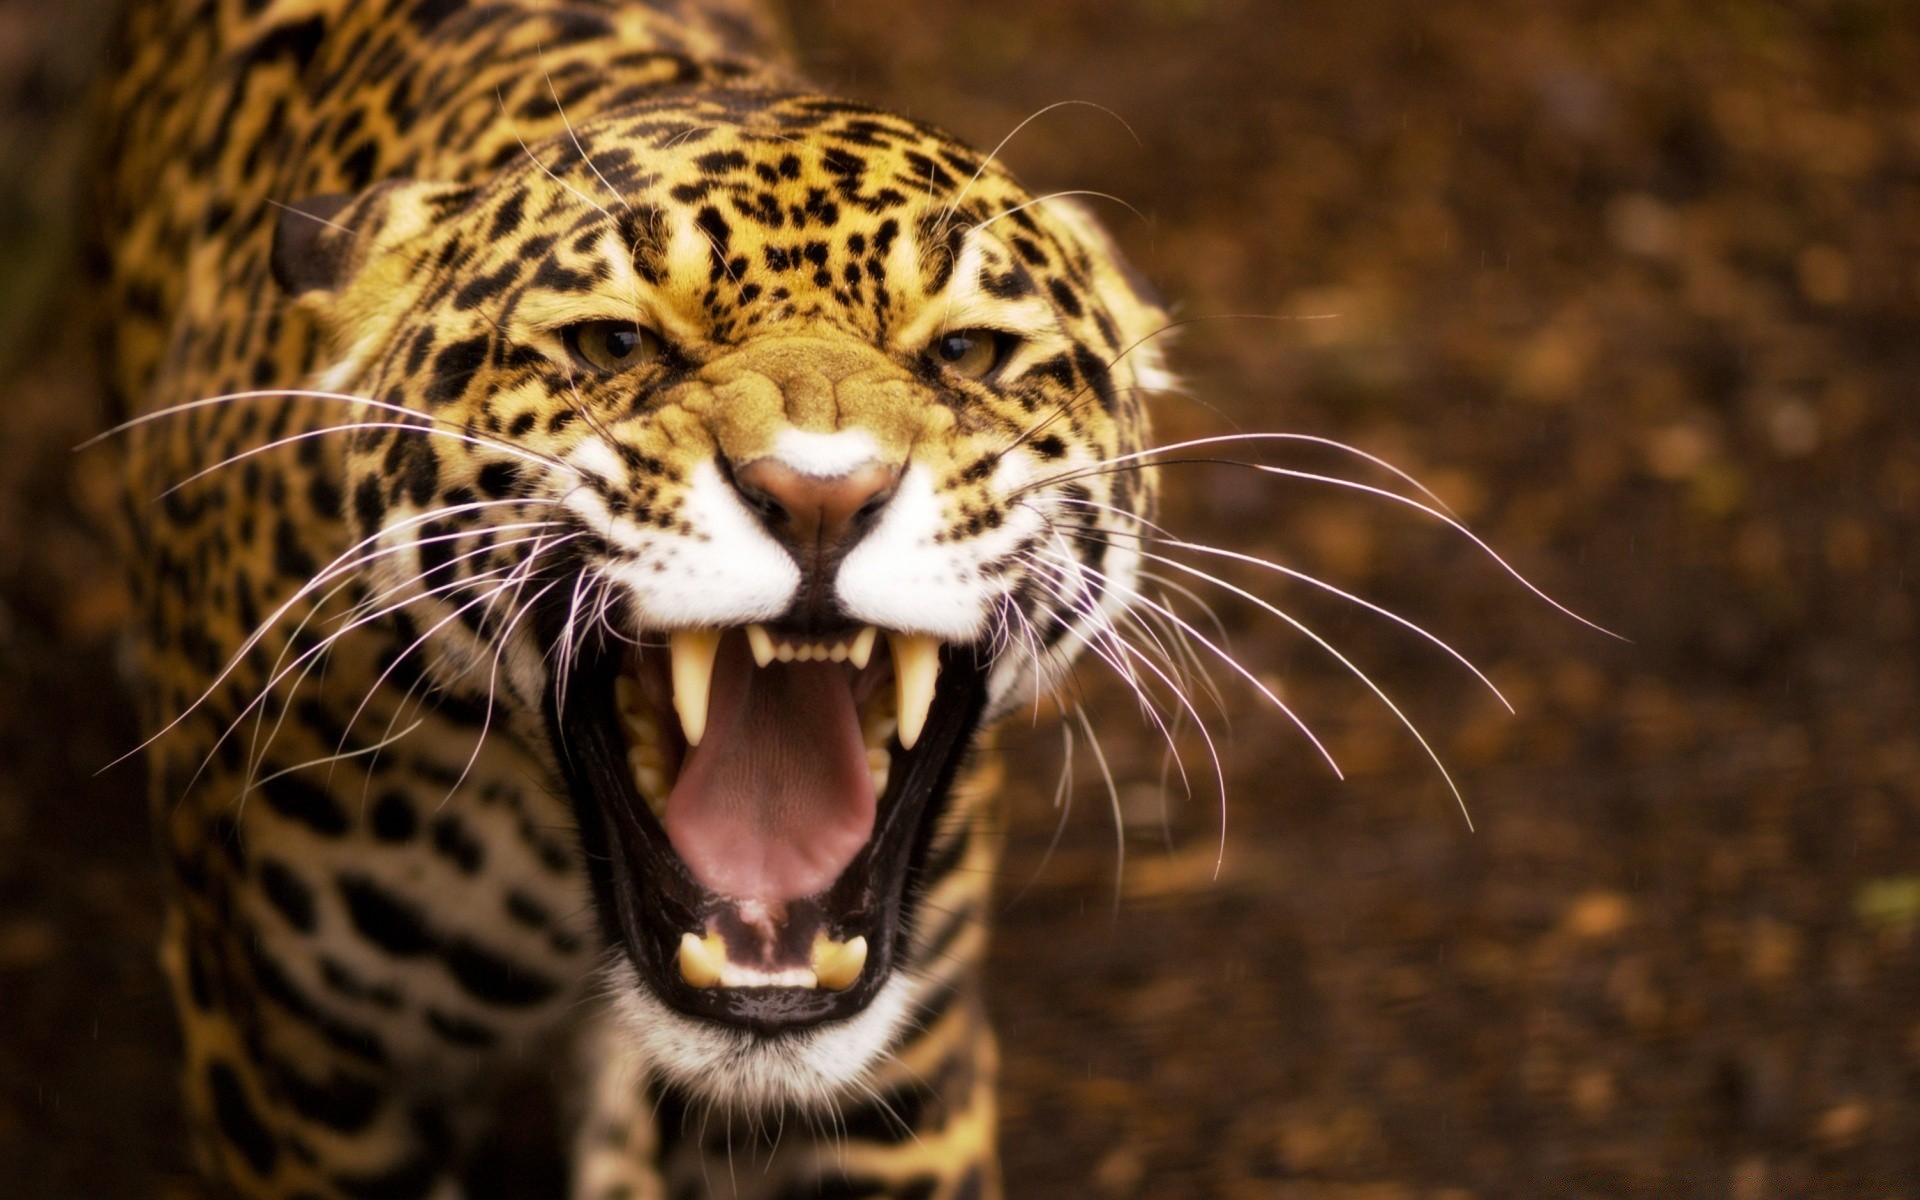 животные кошка дикой природы млекопитающее леопард зоопарк природа тигр хищник портрет животное опасность сафари охотник джунгли